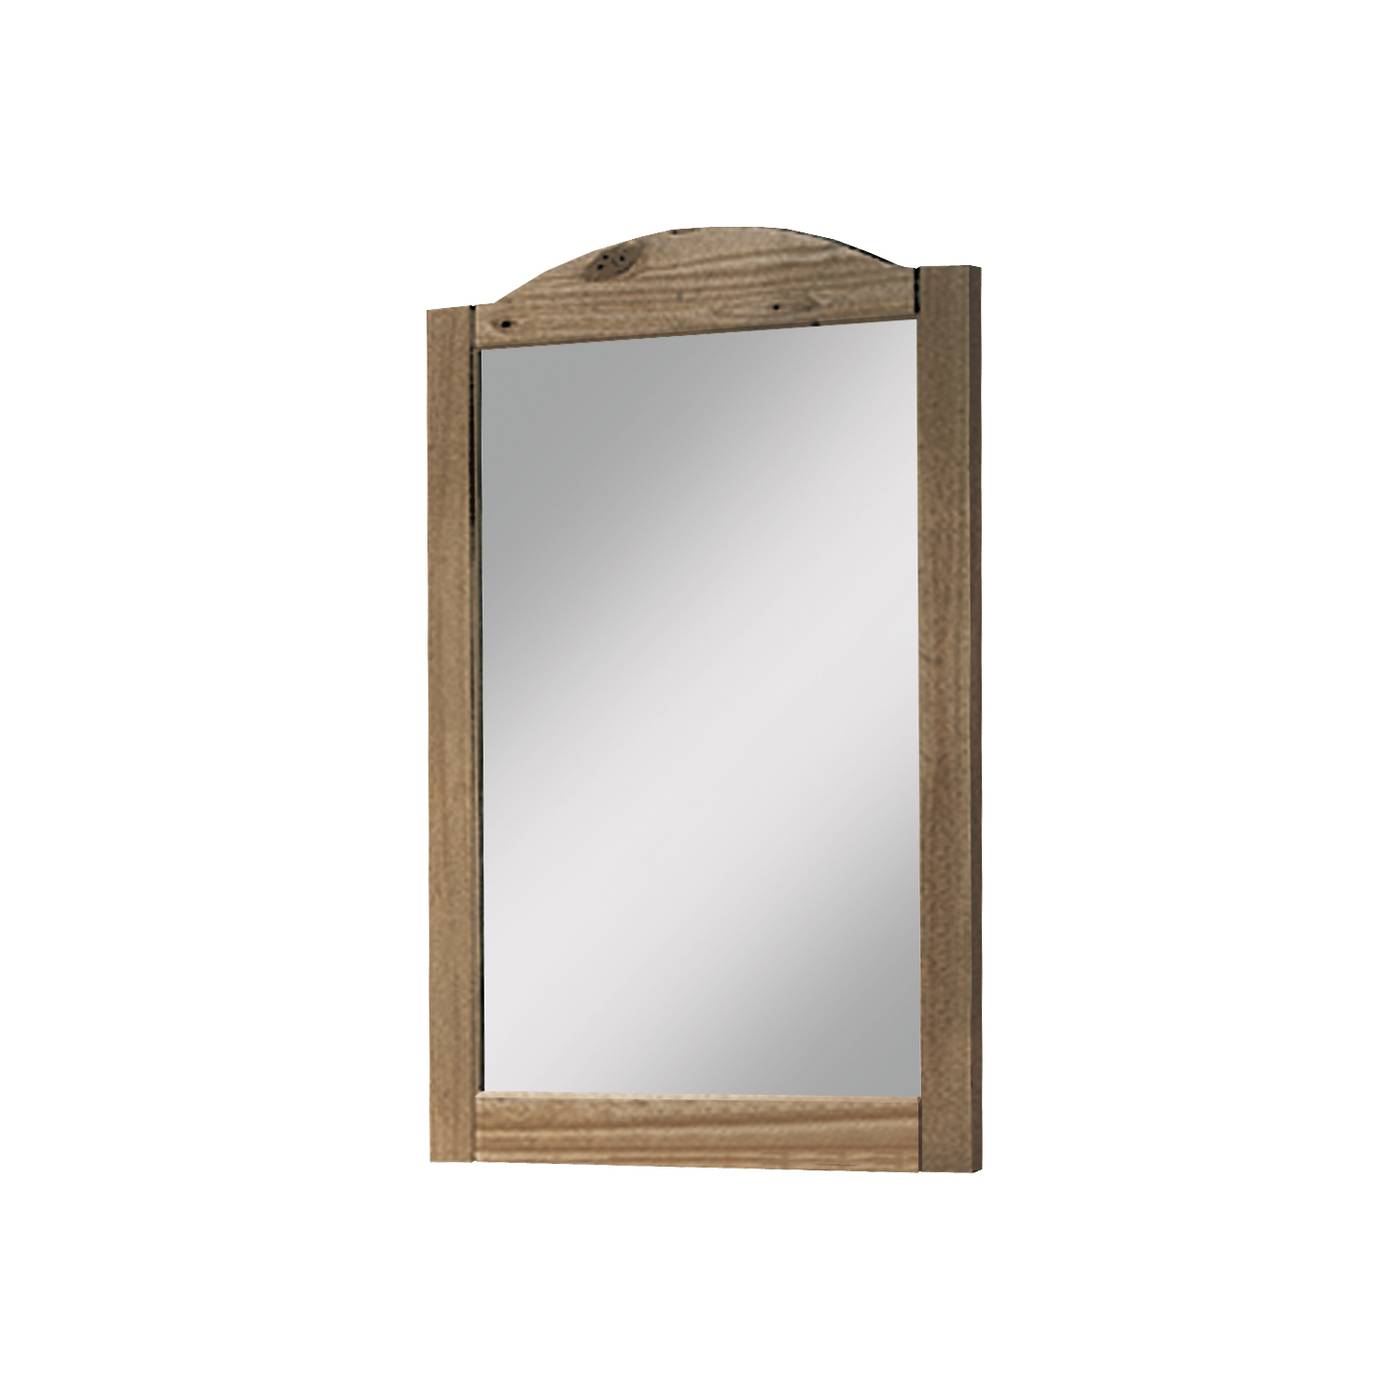 Espejo rústico con marco de madera maciza